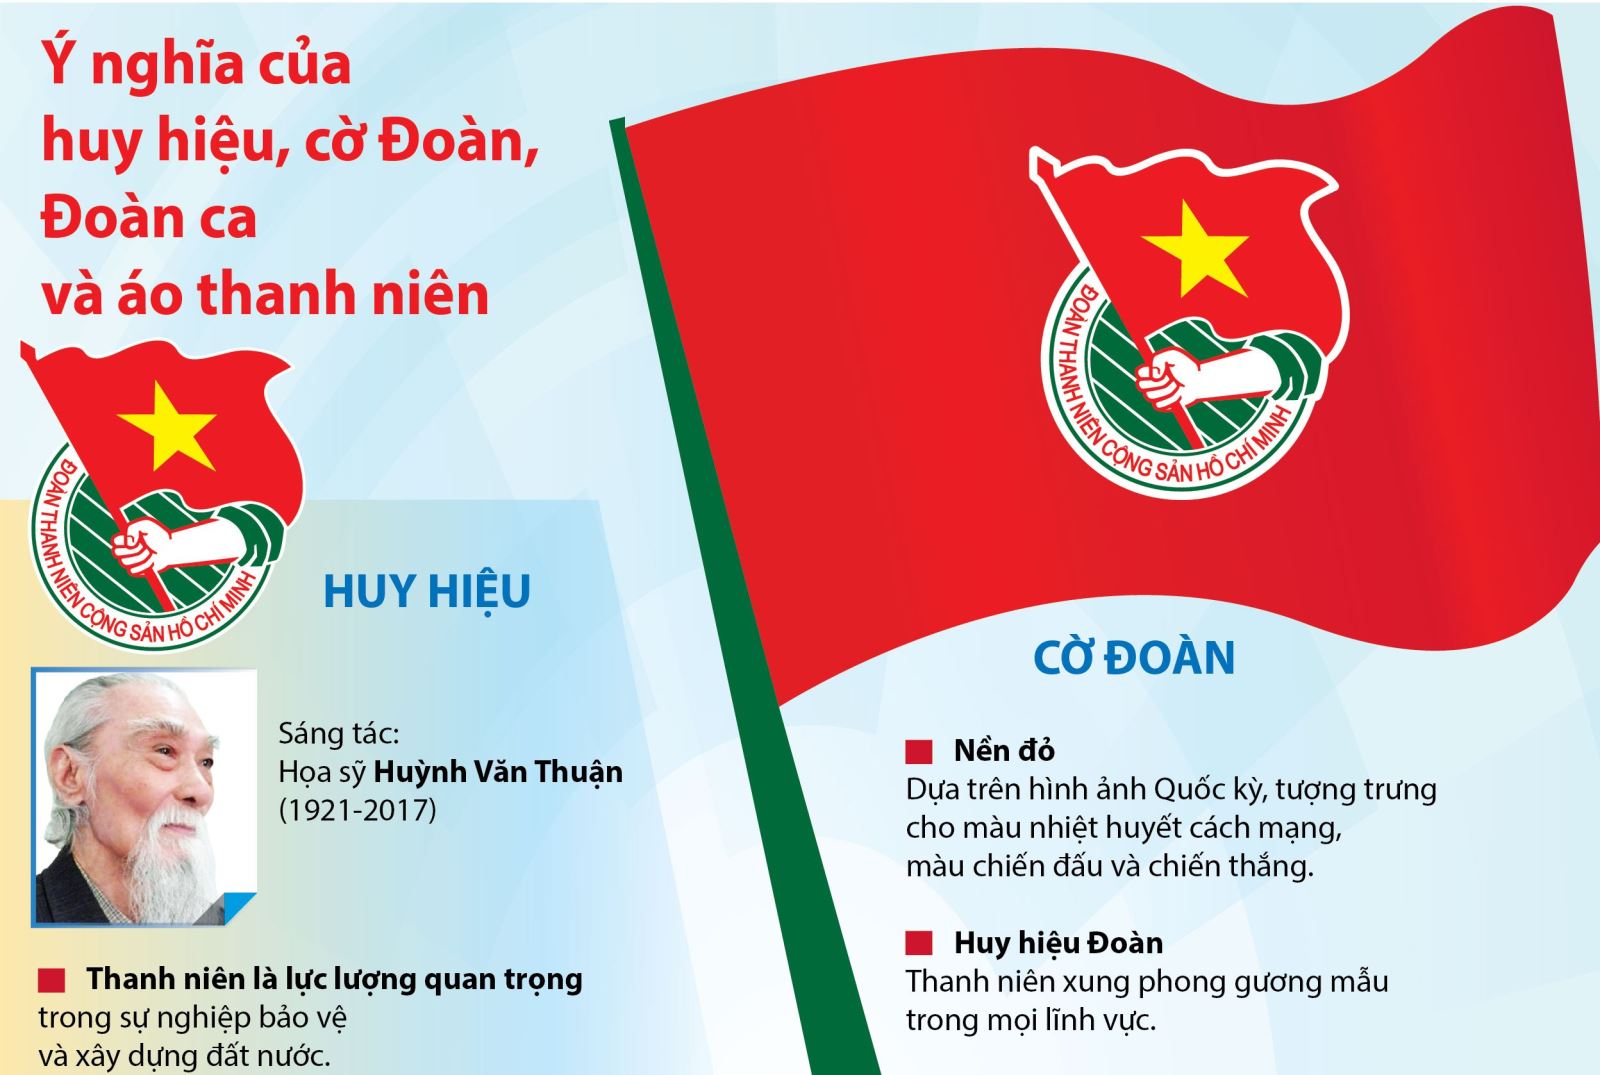 Đoàn ca thanh niên: Đoàn ca thanh niên là âm nhạc thể hiện sự cảm tình với đất nước và dân tộc Việt Nam. Trong năm 2024, các Đoàn thanh niên sẽ tổ chức các hoạt động trực tuyến và offline với chủ đề âm nhạc, từ đó được kết nối với đồng nghiệp khắp mọi nơi, cùng hát và cùng nhảy, tạo ra sự tương tác giữa các thành viên Đoàn, cộng đồng vàuốt xuống yêu nước.